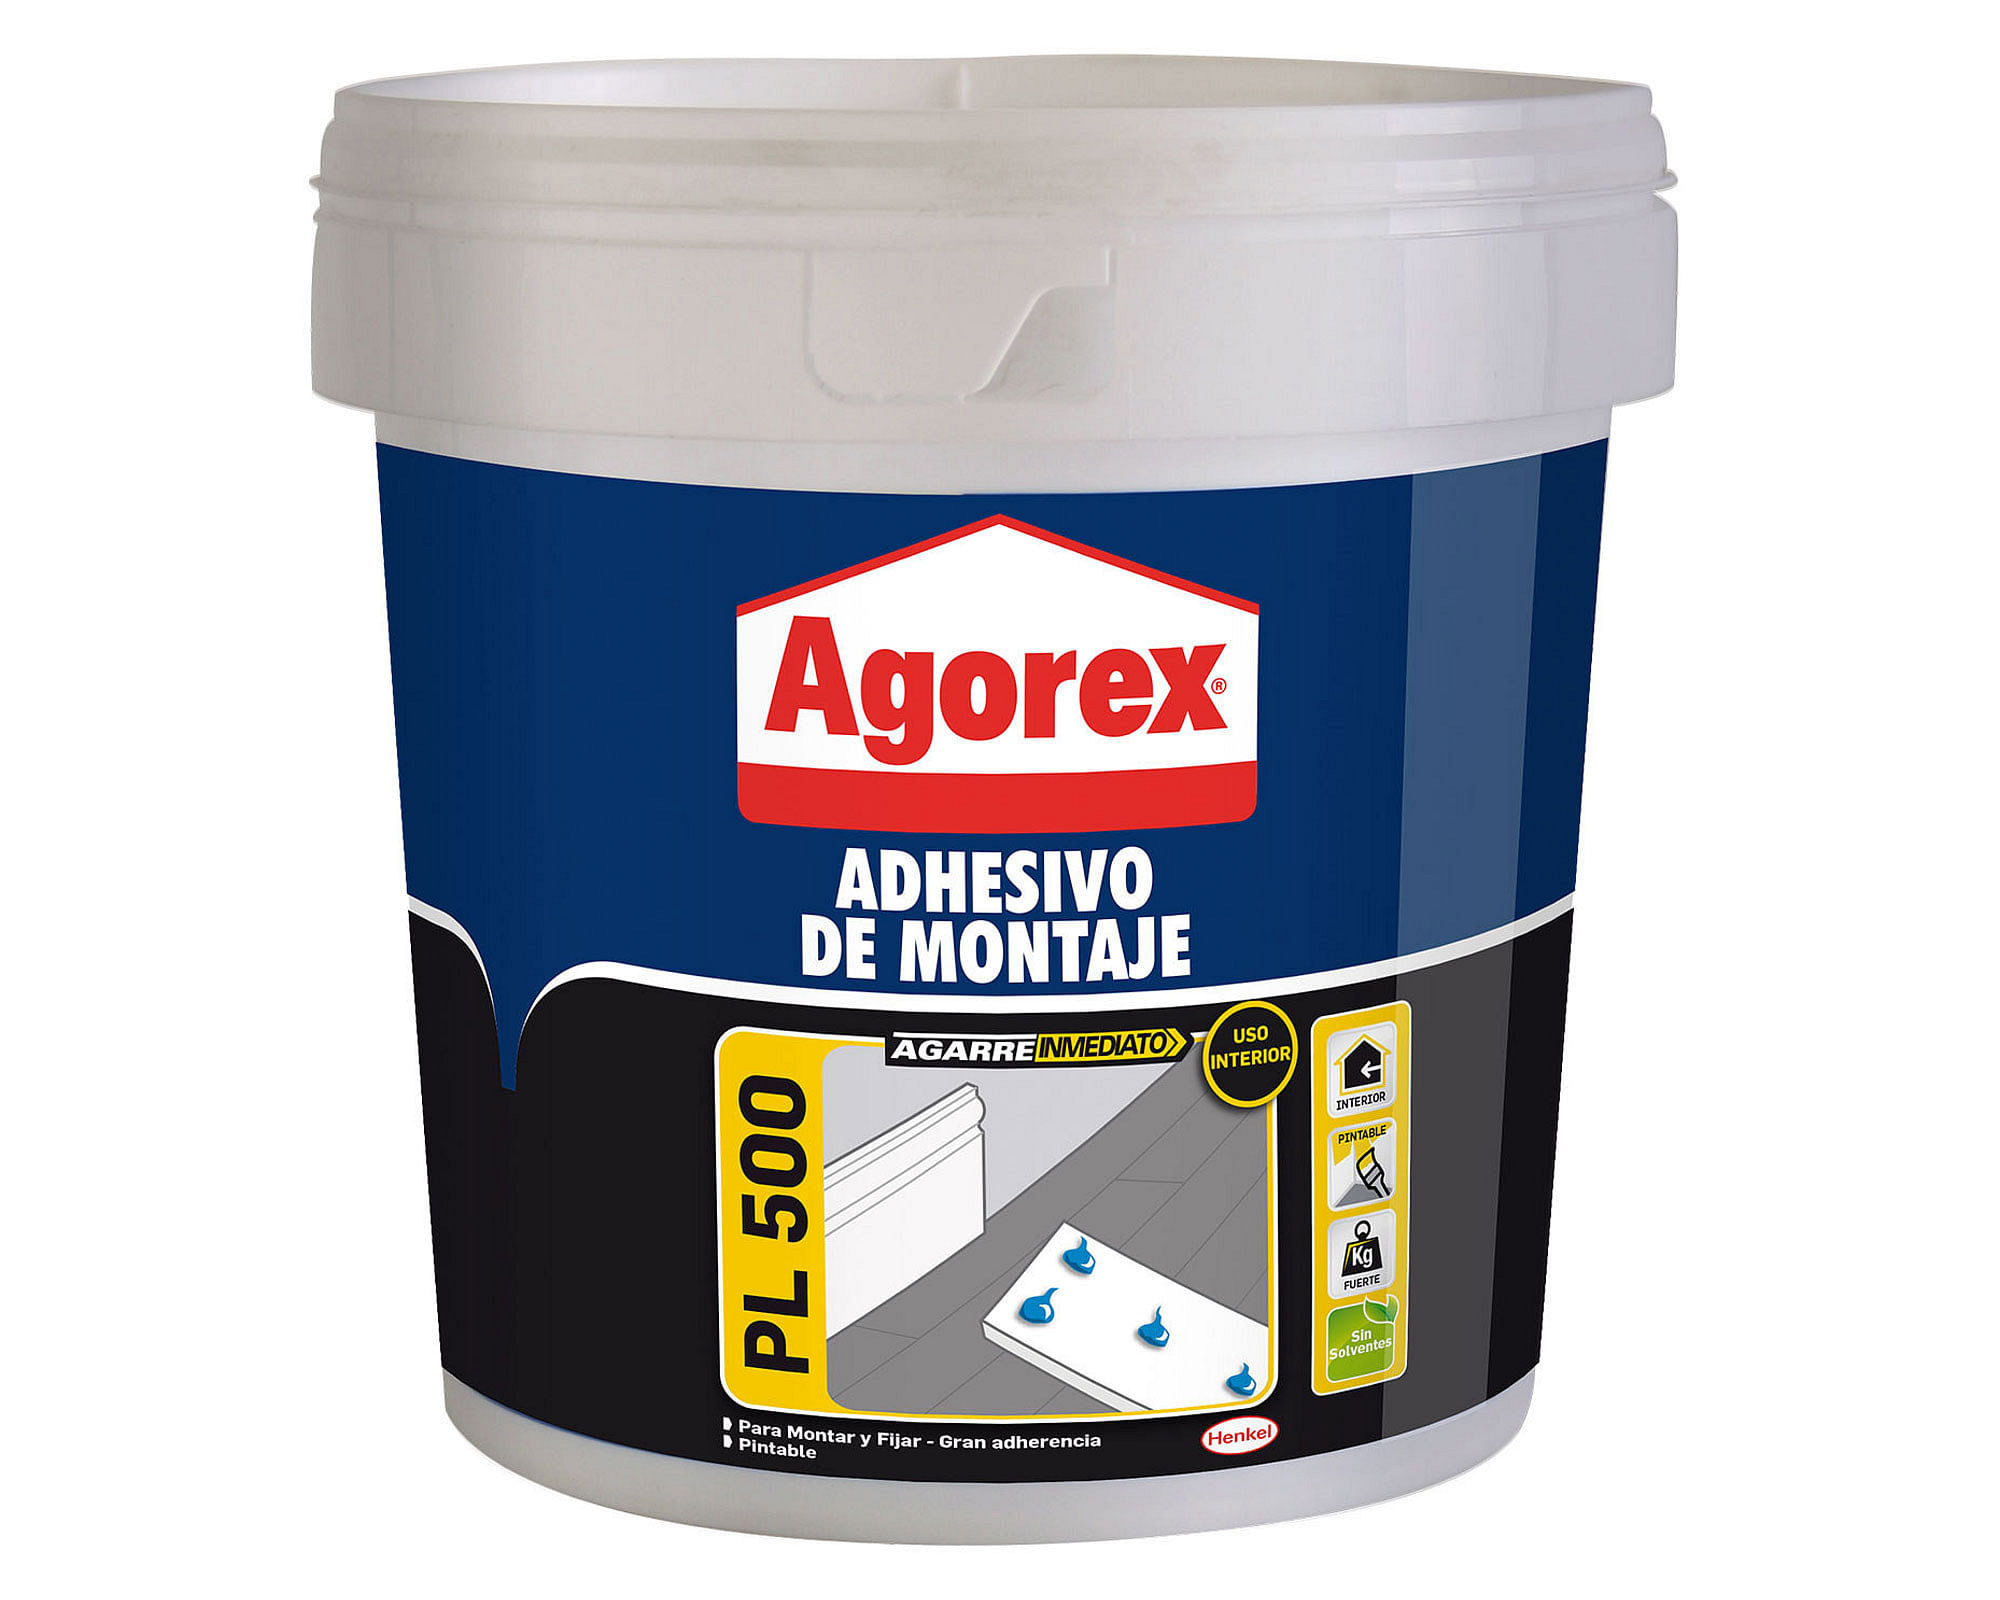 Adhesivo De Montaje Crom - Galon 3,8 Kg • Grexsa Store